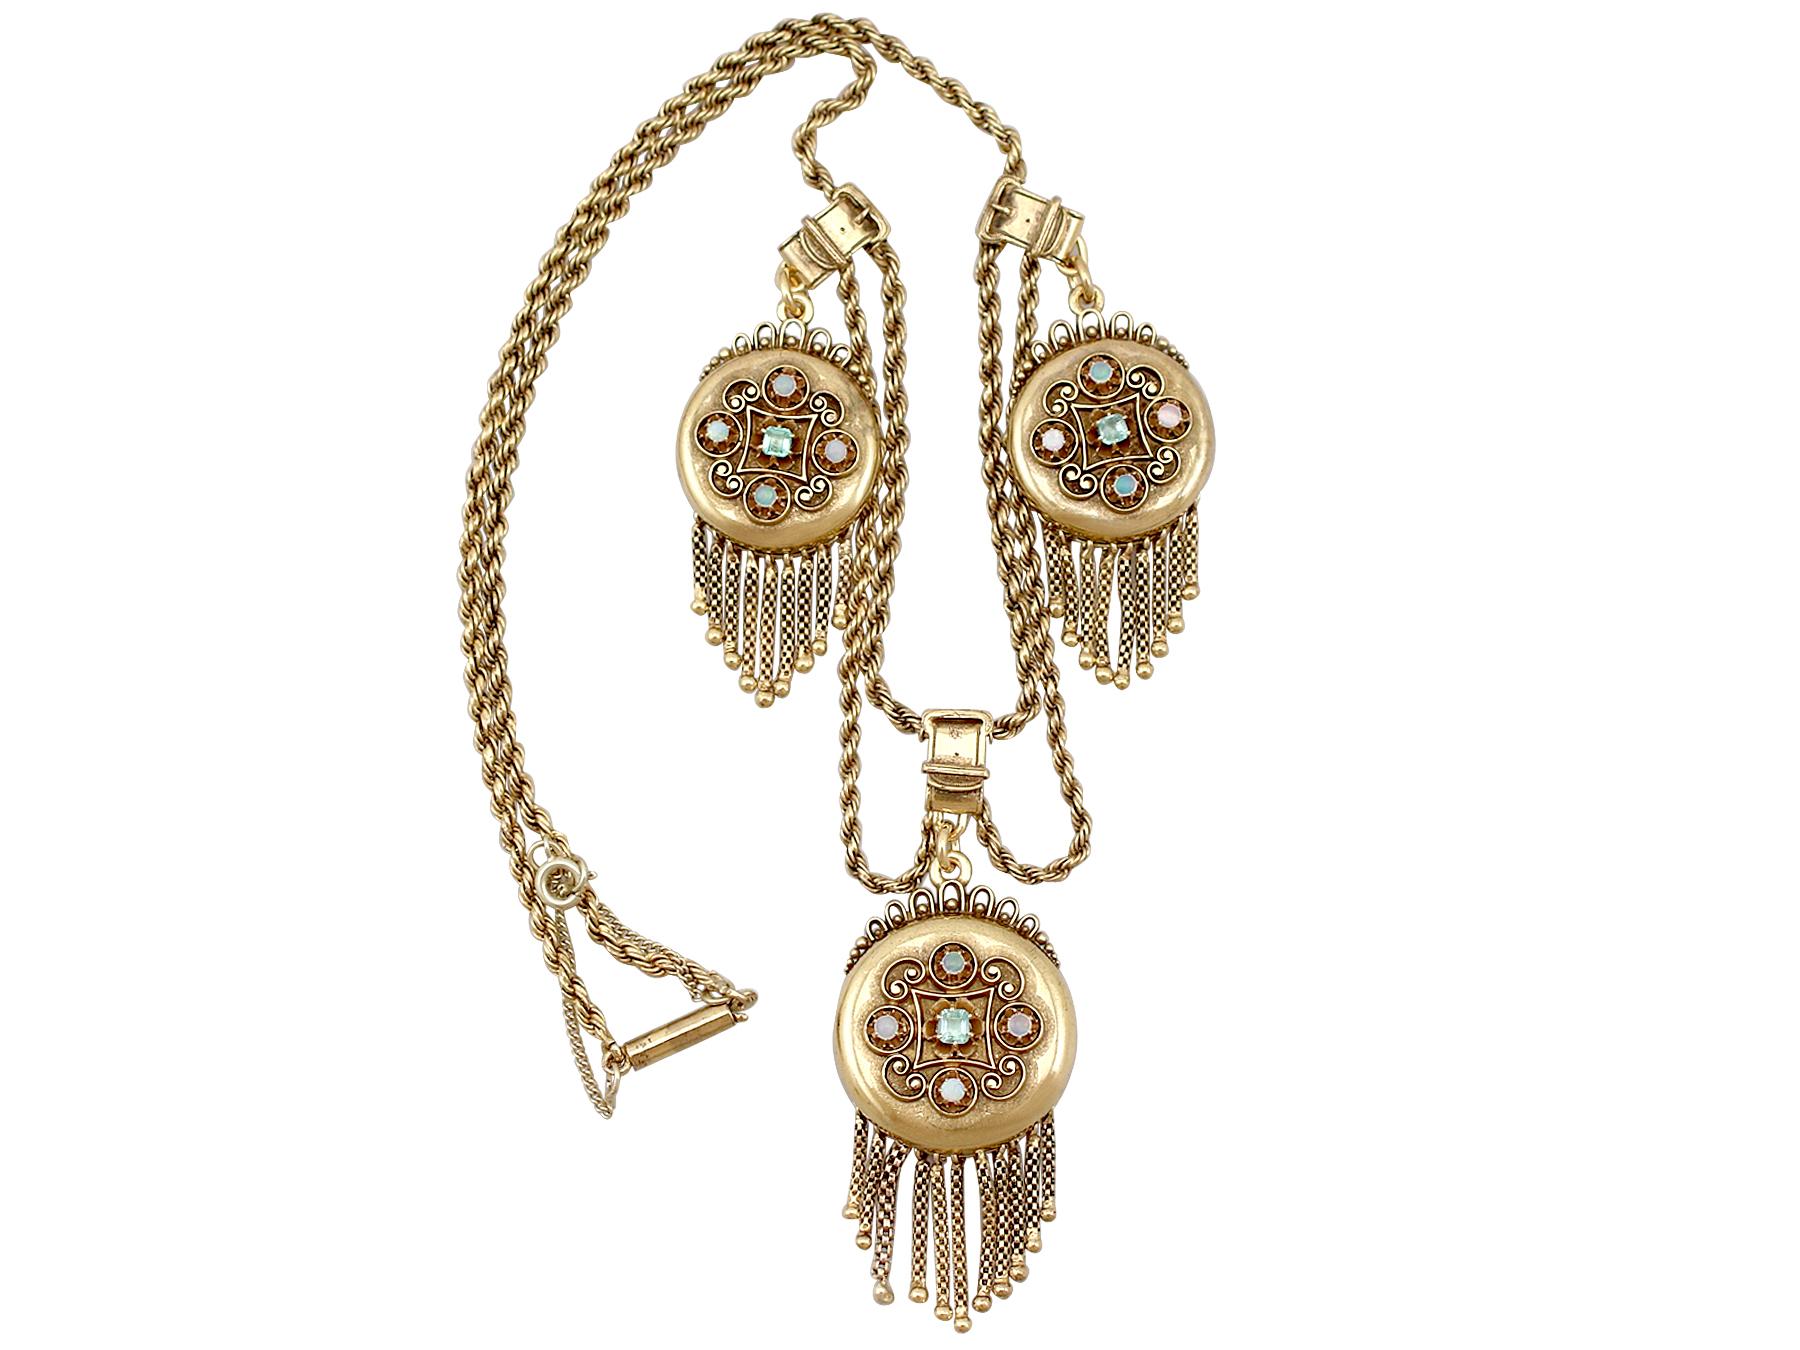 Diese außergewöhnliche, feine und beeindruckende antike viktorianische Halskette mit drei Medaillons wurde in 15 Karat Gelbgold gefertigt.

Die drei Medaillons/Anhänger haben ein kreisförmiges, kissenförmiges Design, das auf jeder Anterior-Seite mit